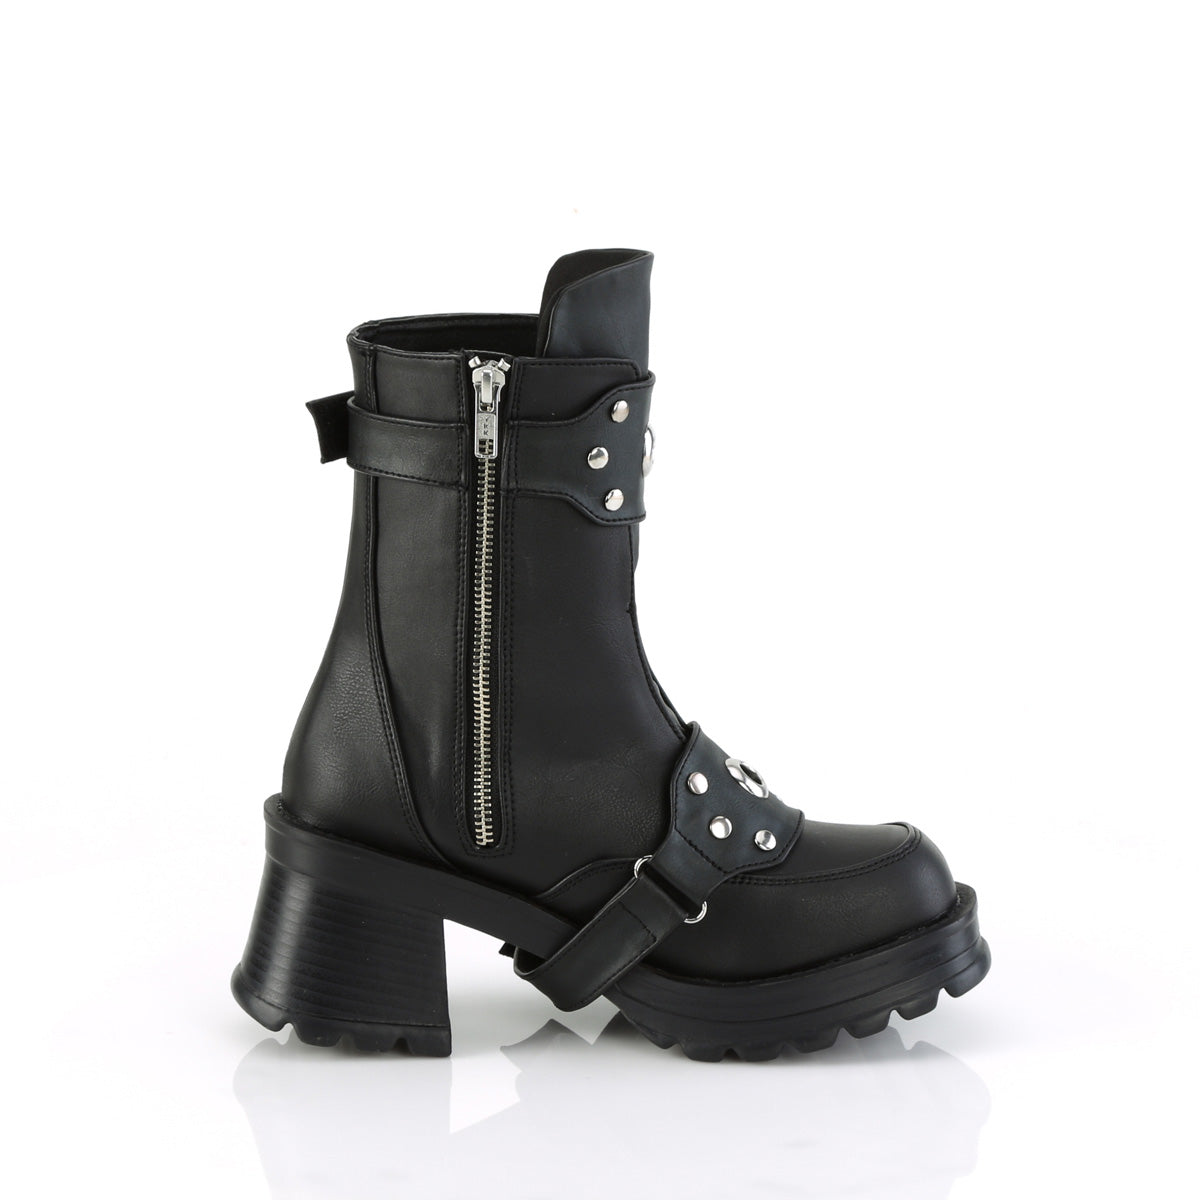 BRATTY-56 Demoniacult Alternative Footwear Women's Ankle Boots